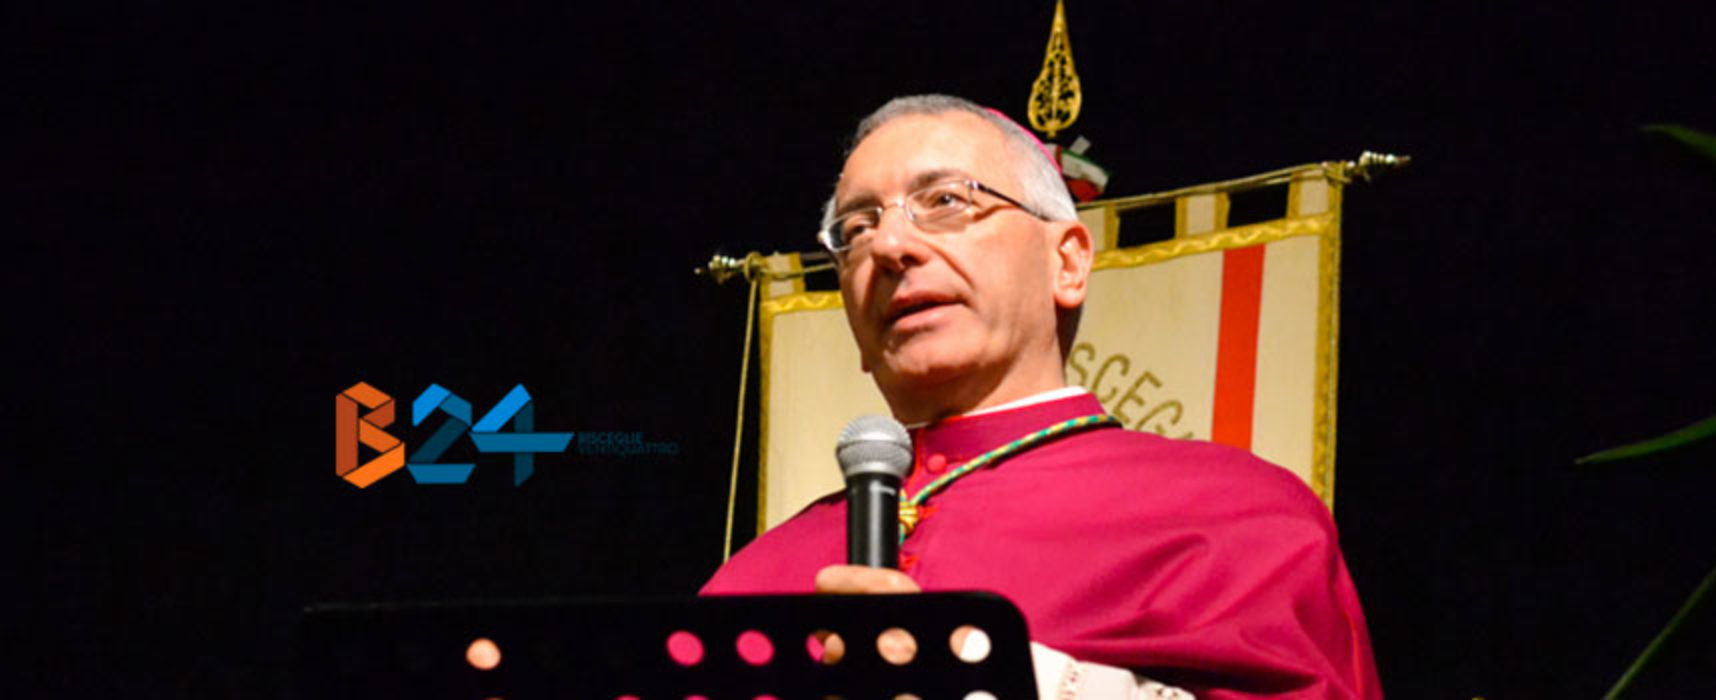 L’Arcivescovo D’Ascenzo al mondo della scuola, “Ascolto da riscoprire verso chi ti è accanto”